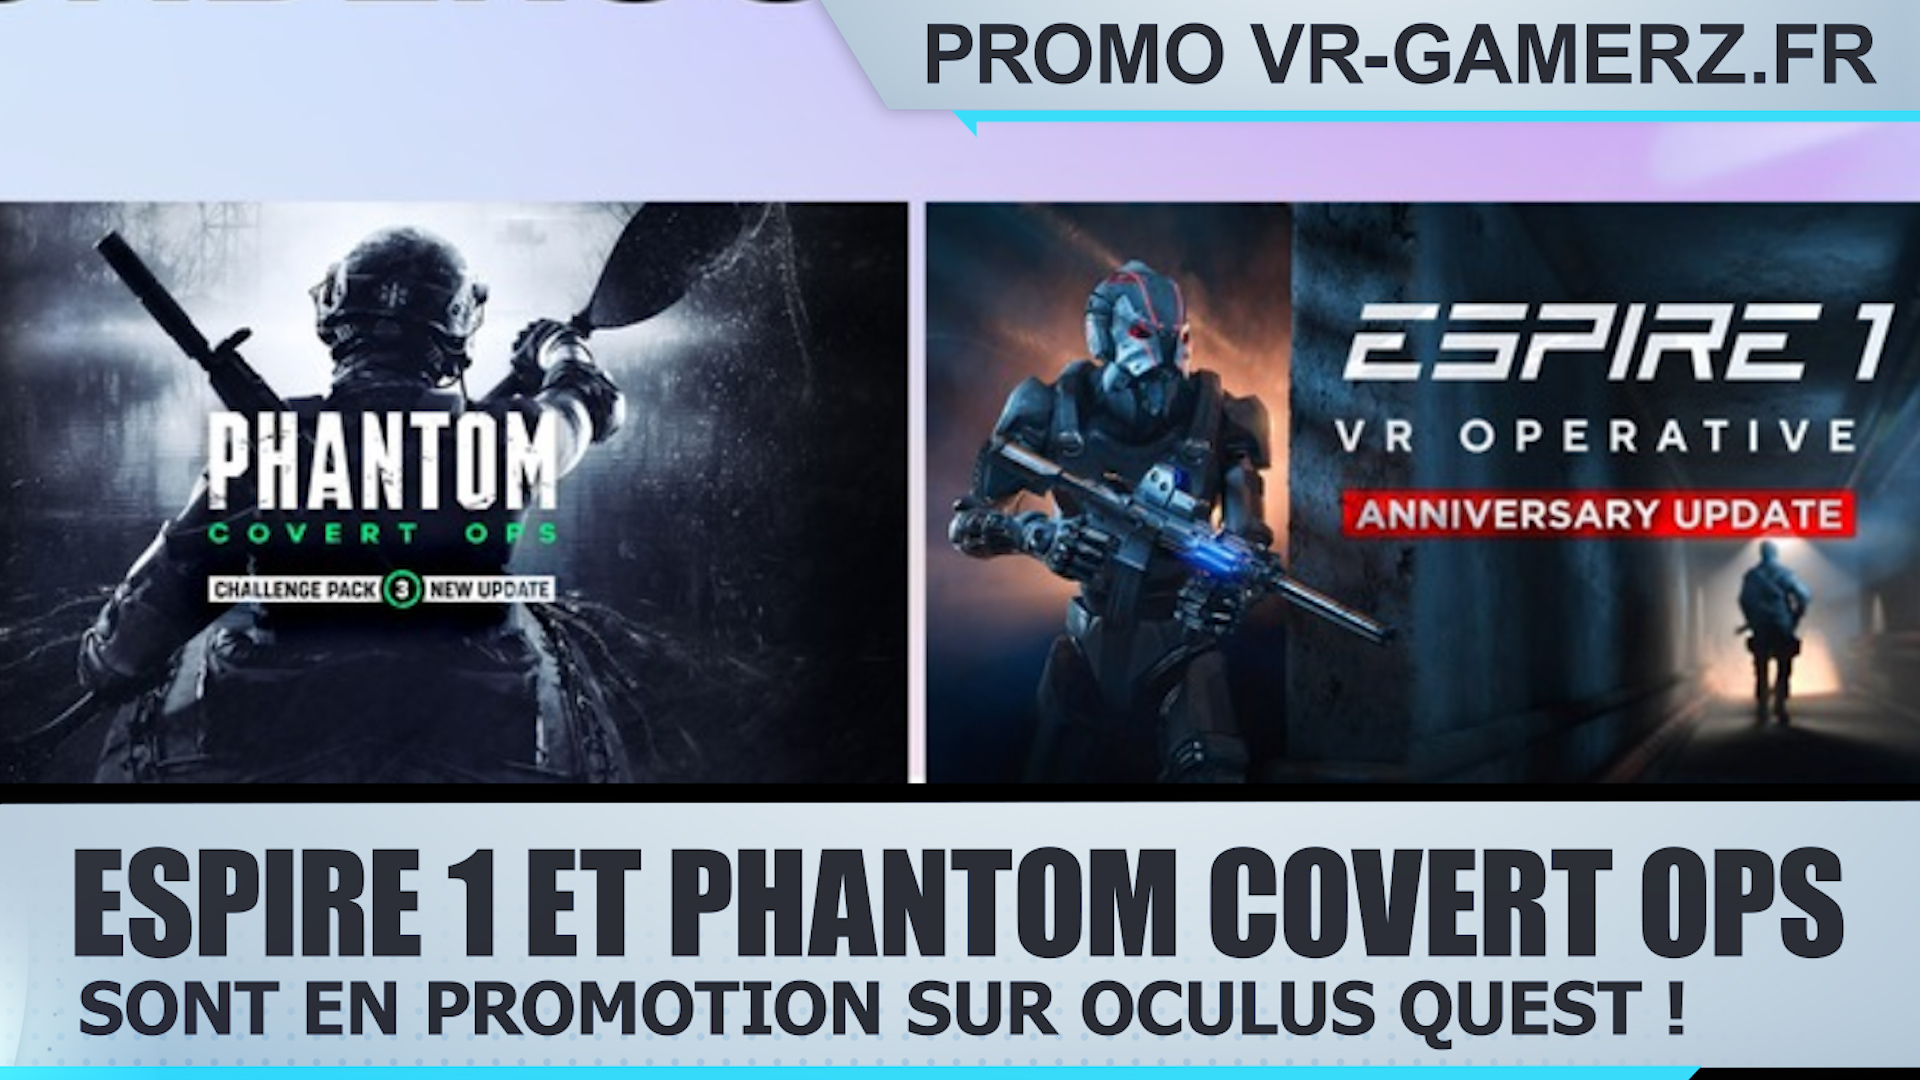 Espire 1 et Phantom covert ops sont en promotion sur Oculus quest !